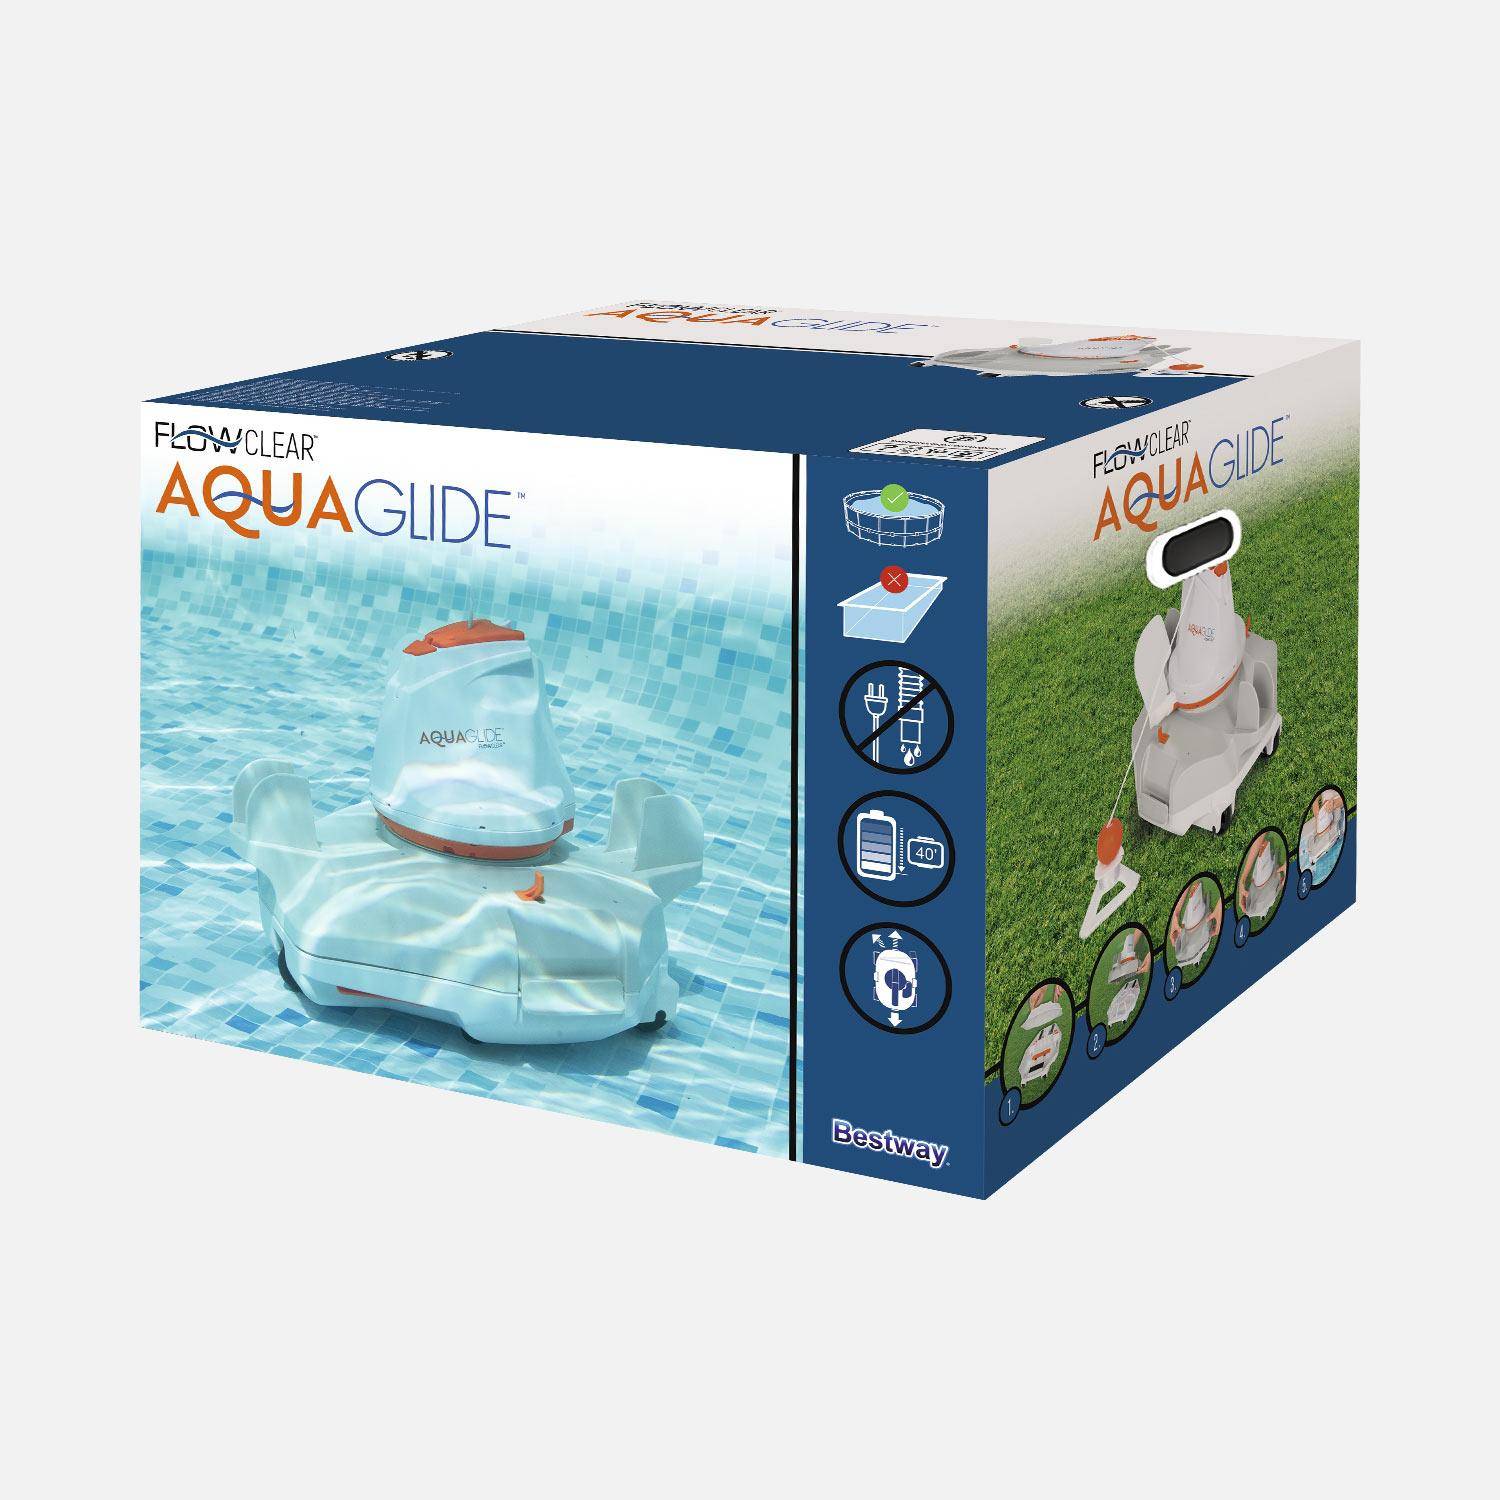 Aspiratore autonomo Flowclear aquaglide per piscine a fondo piatto fino a 20m². Photo6